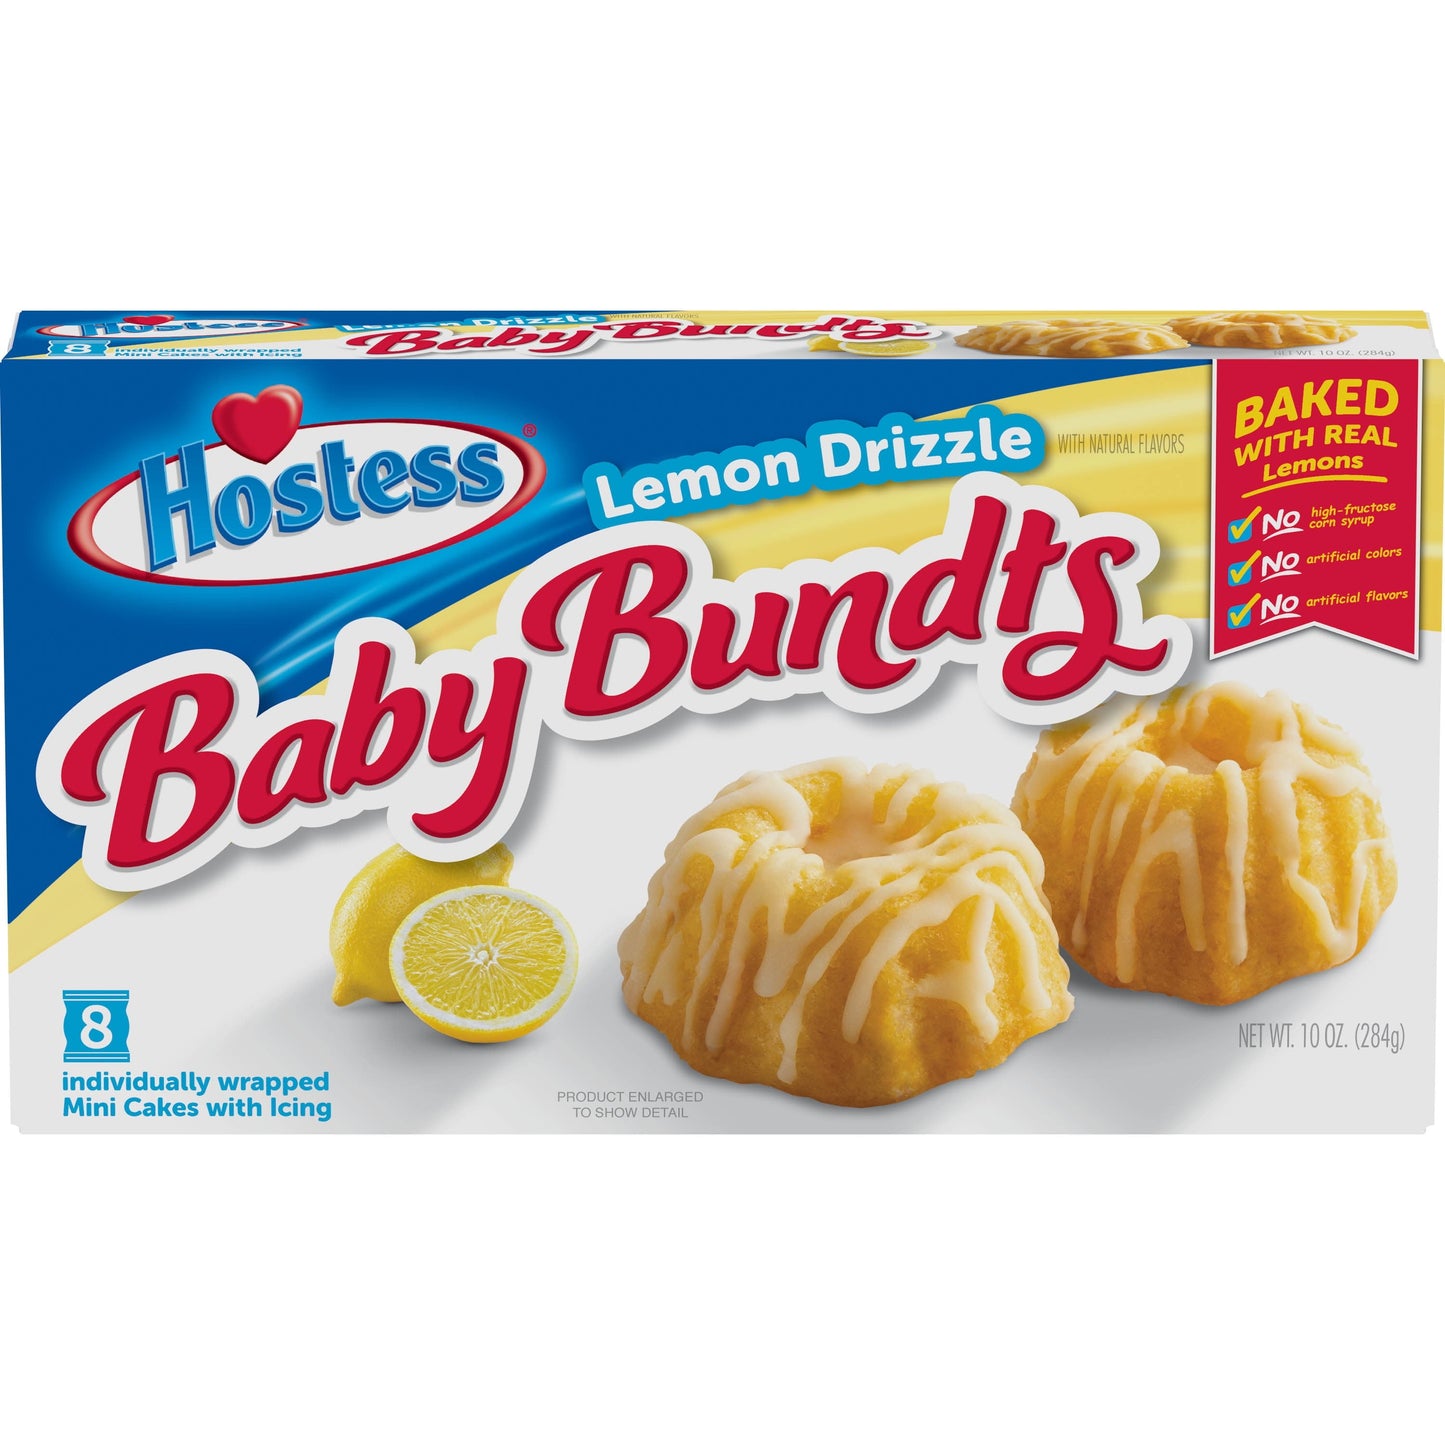 HOSTESS Baby Bundts, Lemon Drizzle Cakes, 8 Count , 10 oz